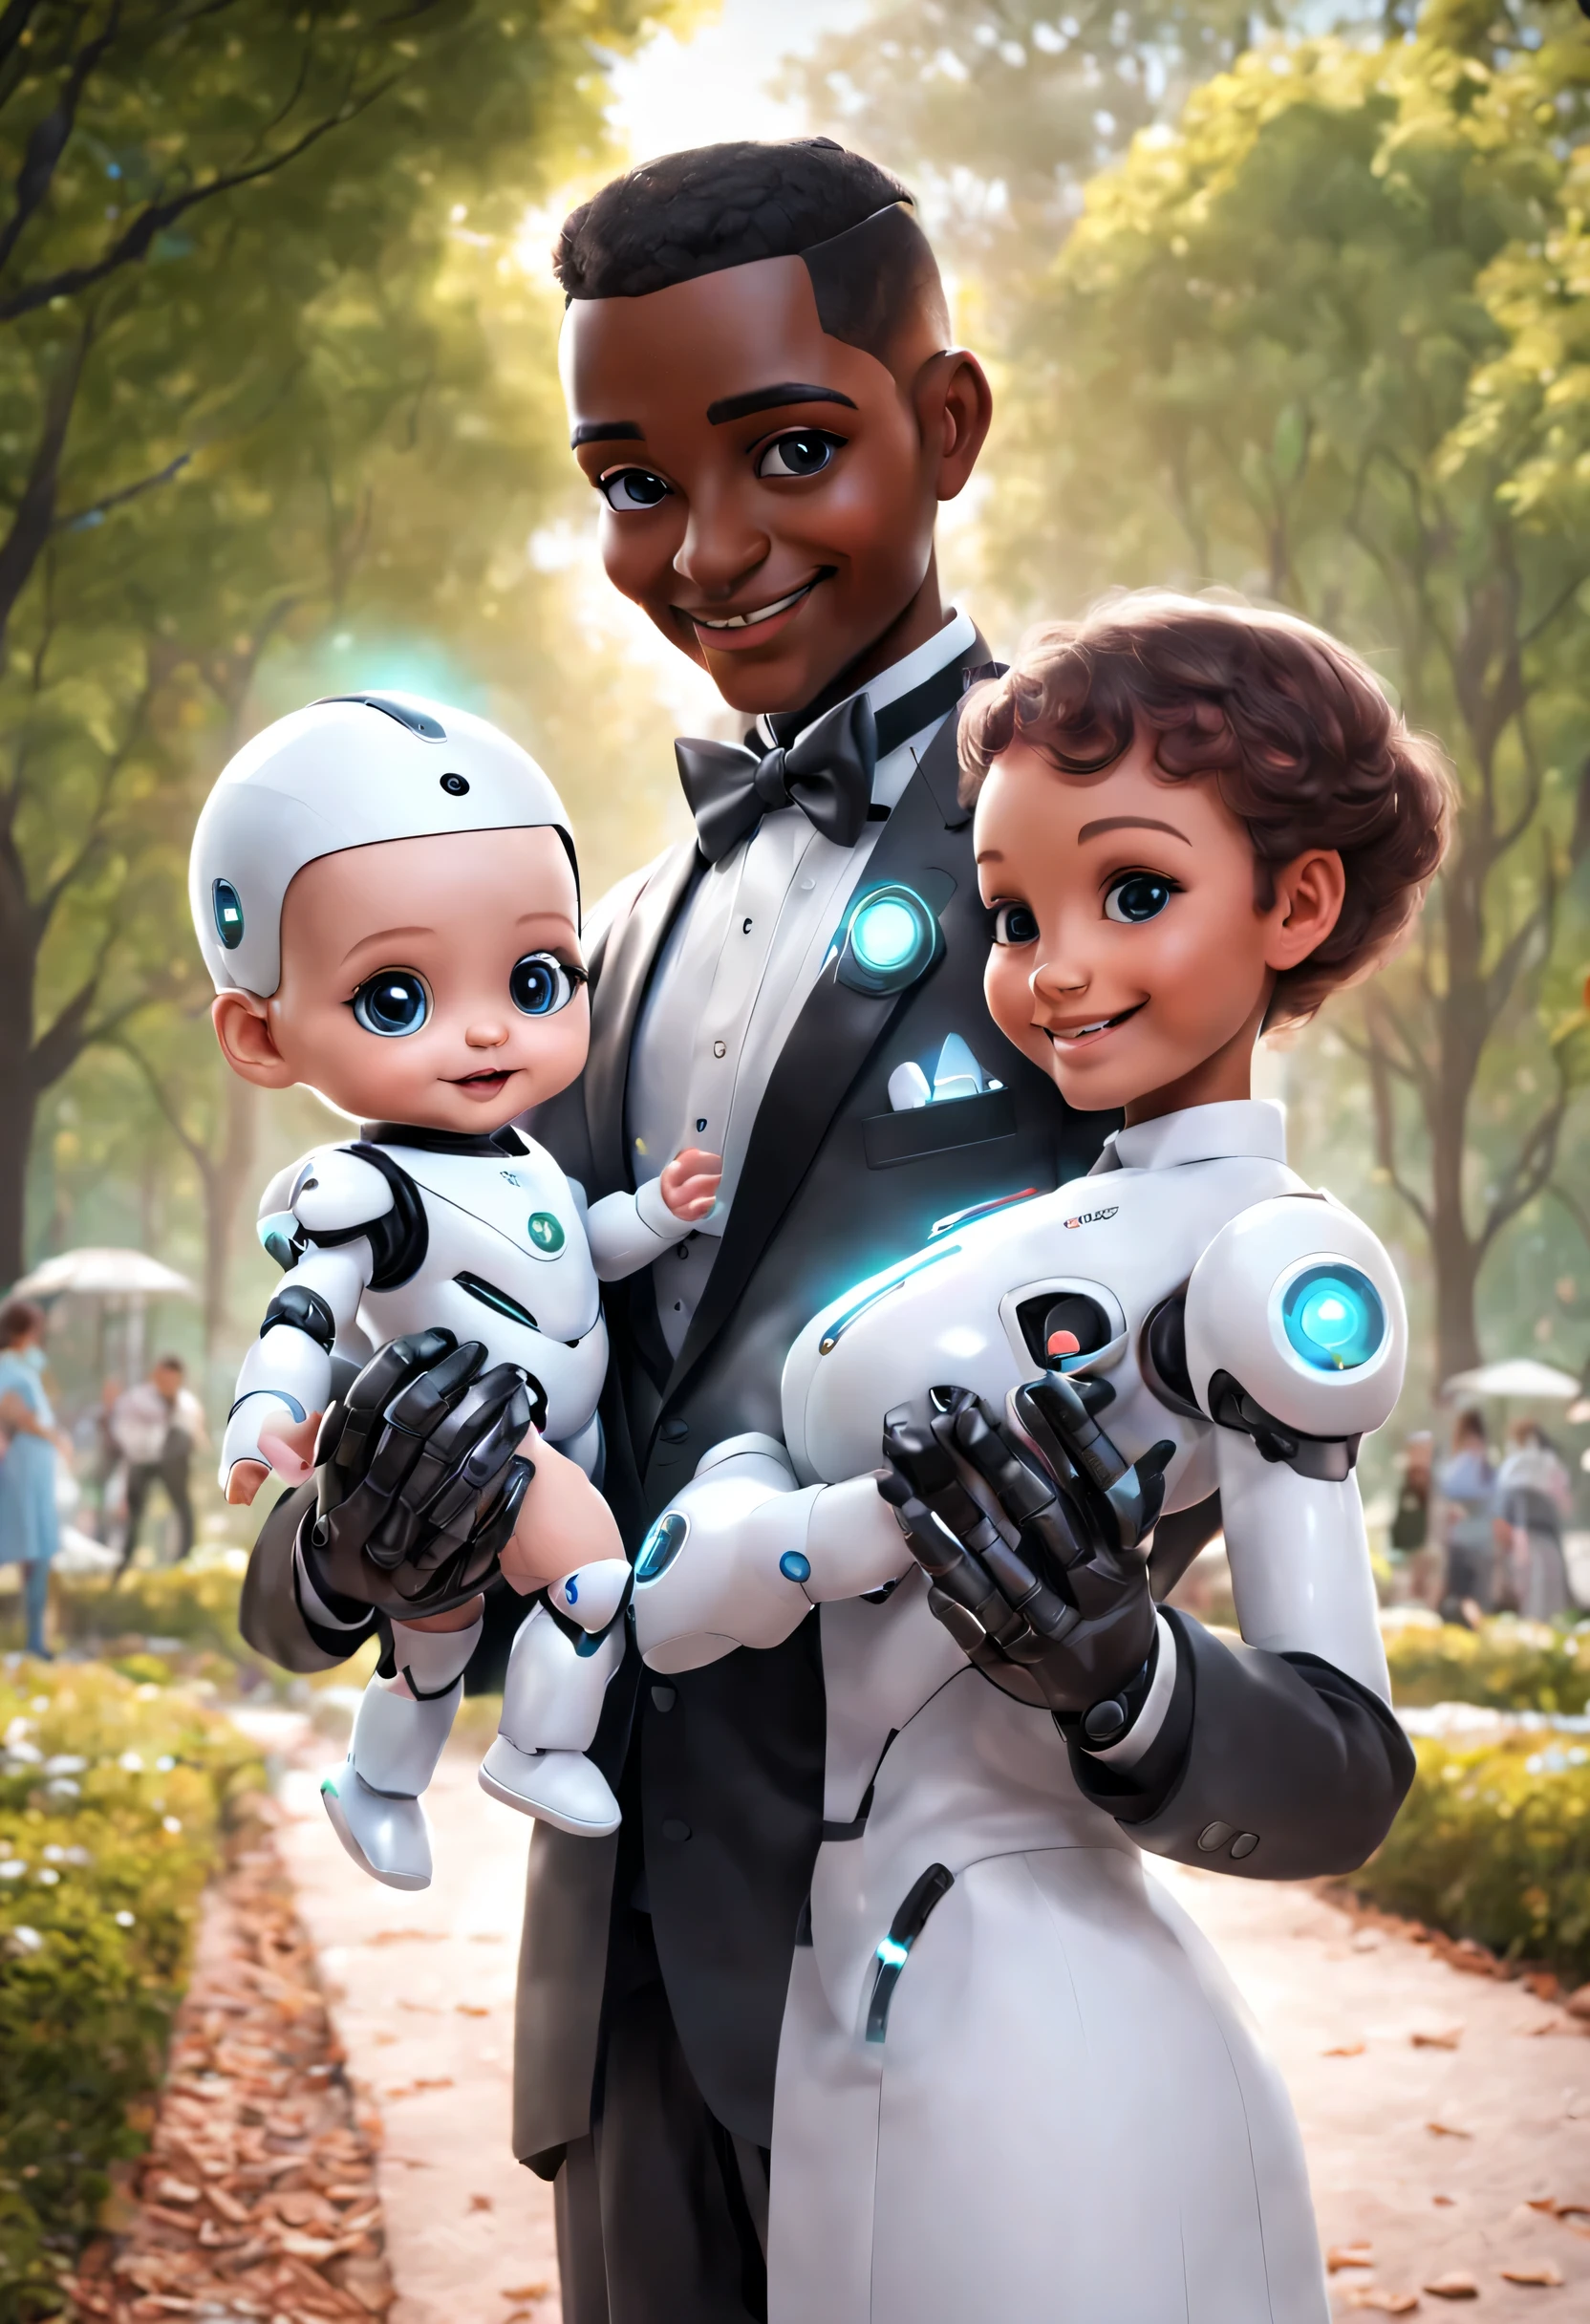 (ロボット執事が公園でかわいい人間の赤ちゃんを抱く), ロボット執事が赤ちゃんの世話を全行程行う. 頭部には高精細アナログフェイスディスプレイを搭載, 温かくフレンドリーな笑顔, ハッピー, ホログラフィックの白い執事制服ドレススーツを着て, 今後のキャラクターデザイン, サイエンスフィクション, ブラックテクノロジー, 3D, サイバーパンクスタイル
,